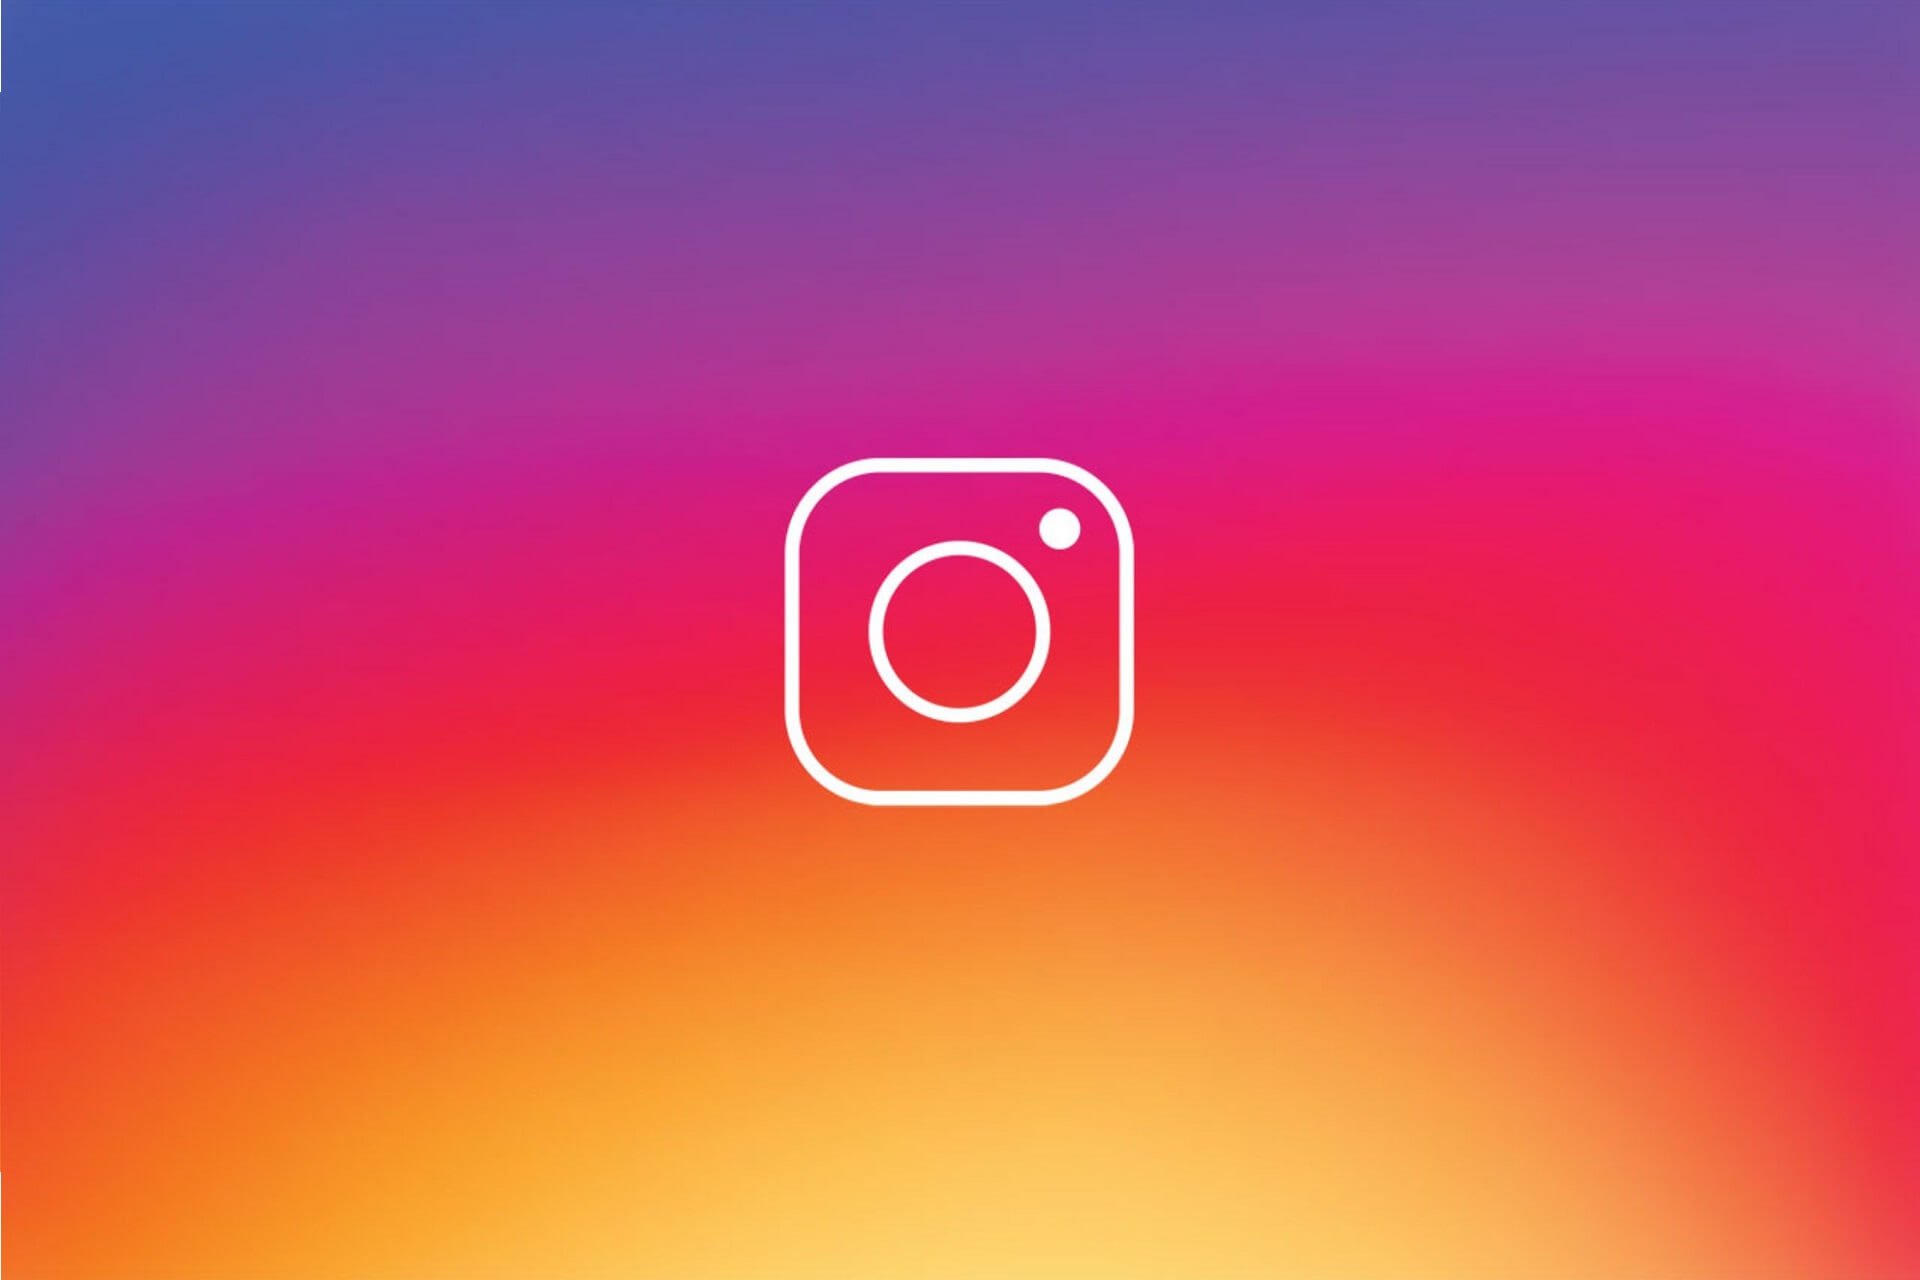 Fix Instagram sign up error